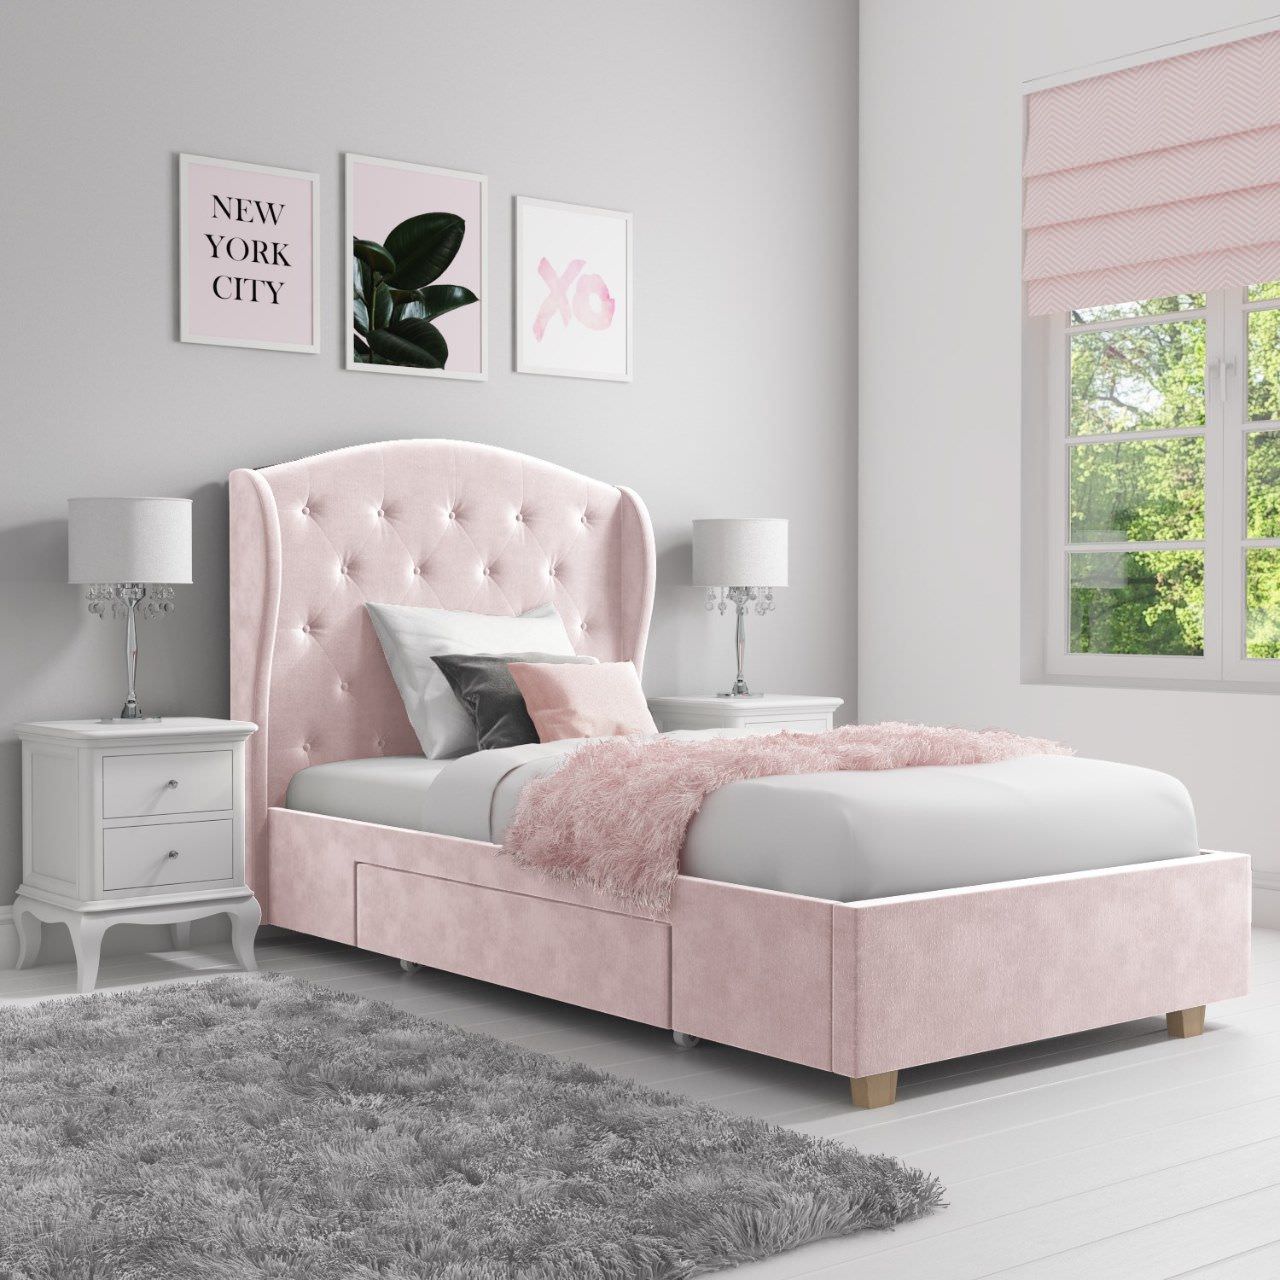 Giường đơn thiết kế theo phong cách tân cổ điển với lớp bọc nhung sang trọng